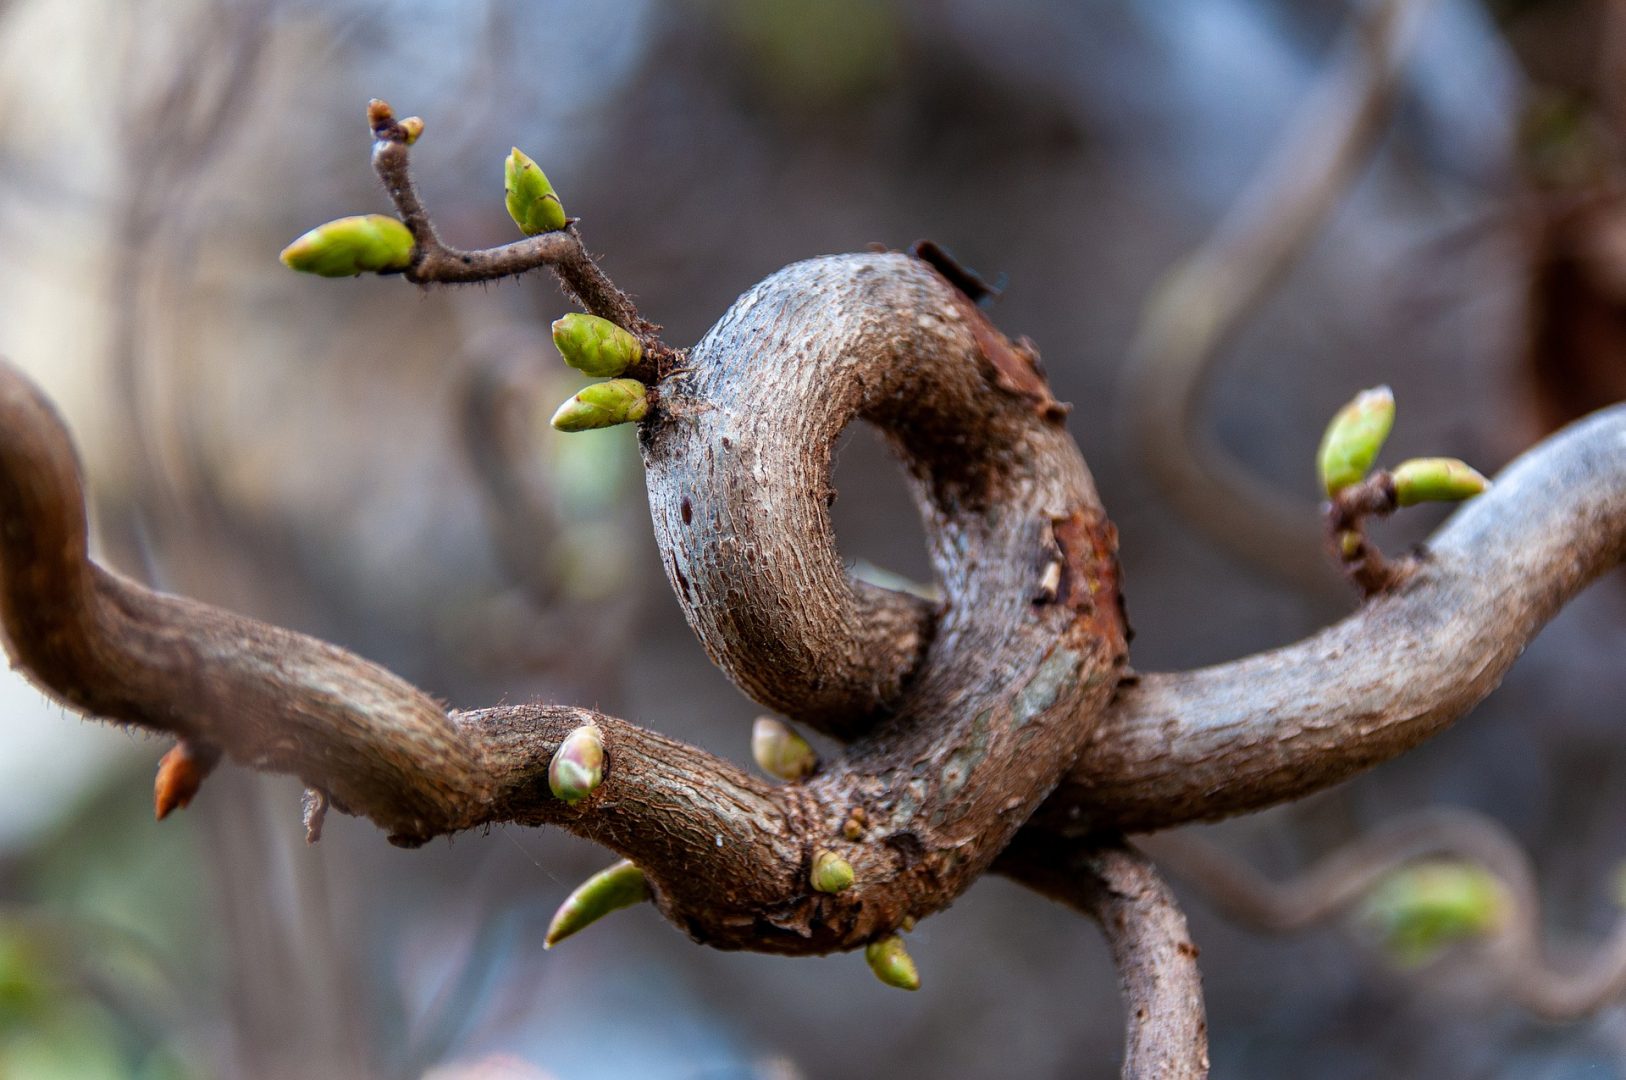 Le printemps est enfin arrivé Image by wal_172619 from Pixabay